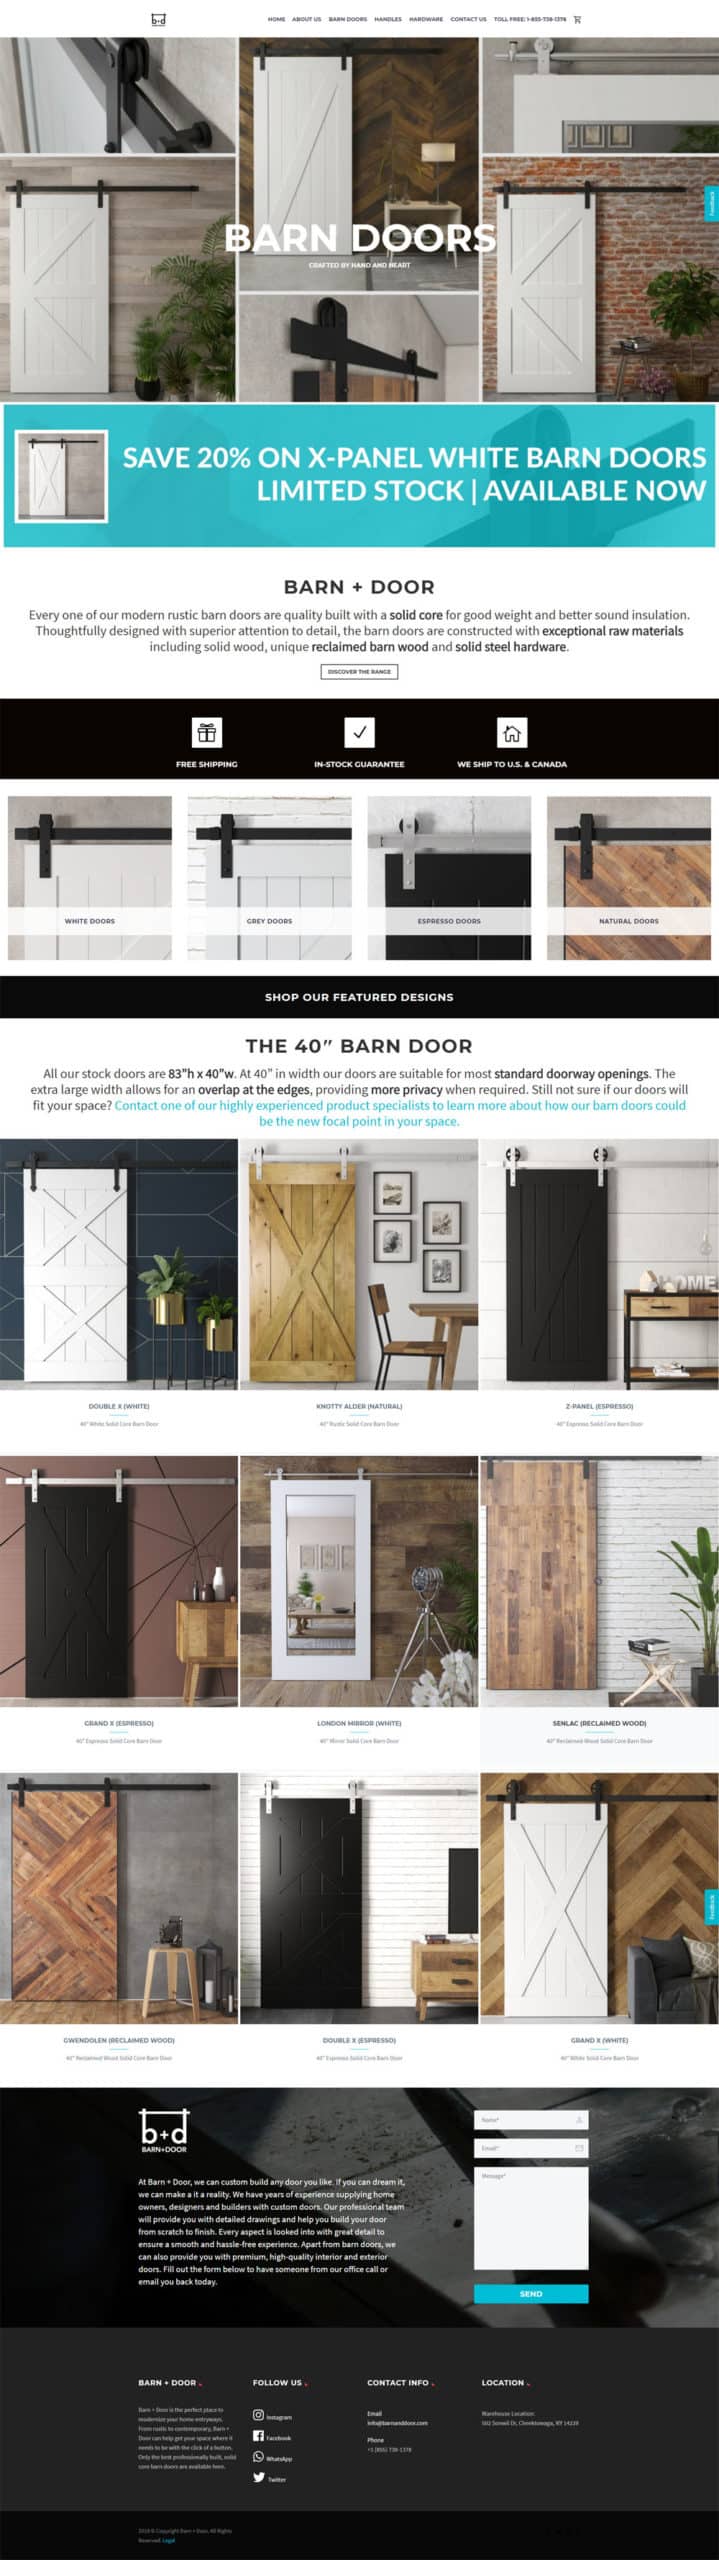 Barn Doors - Core Concepts Design